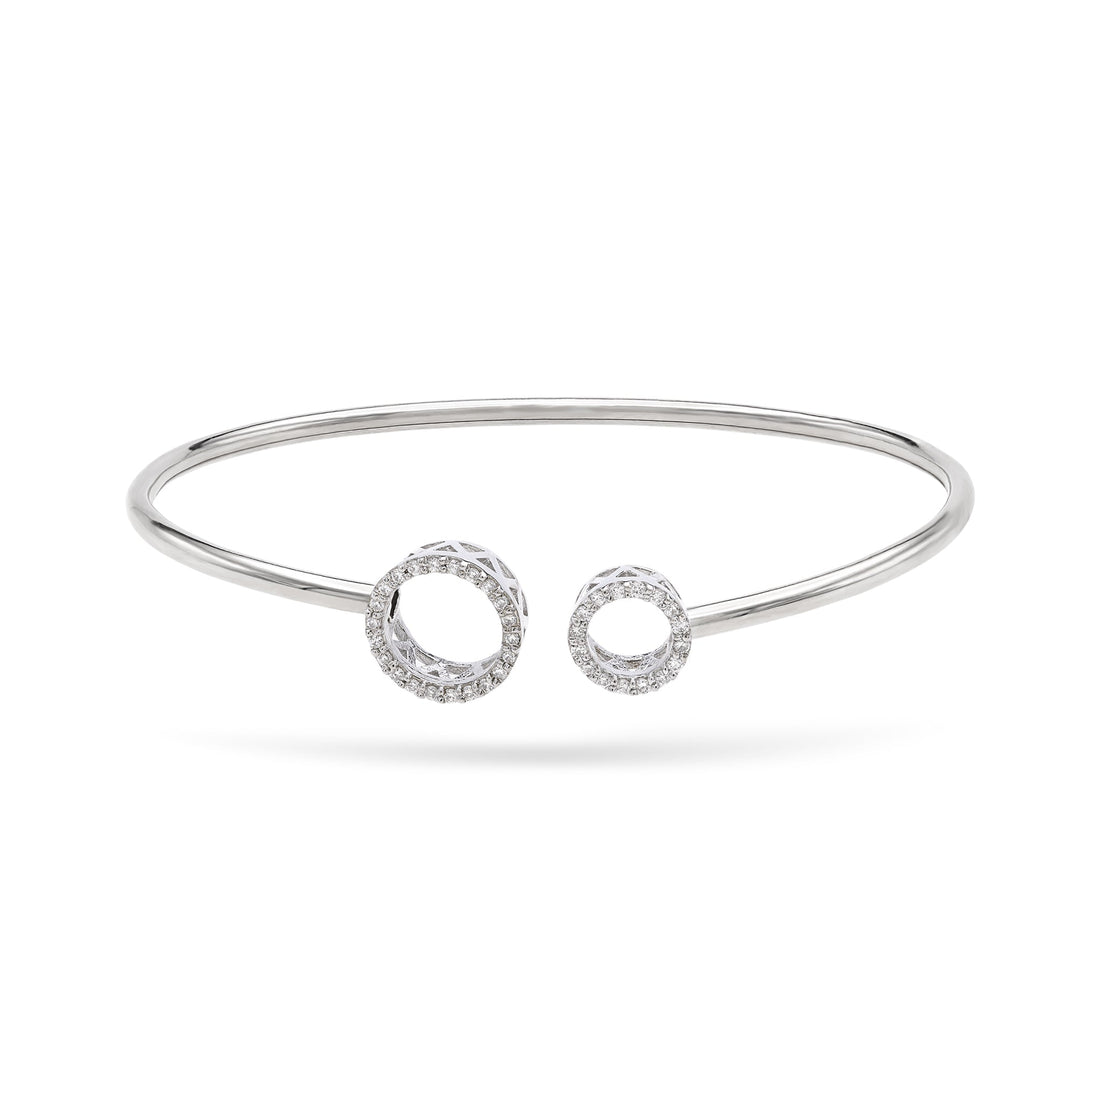 Gilda Jewelry Cuffs | Diamond Cuff Bracelet | 0.11 Cts. | 18K Gold - White / 17 / Diamonds - bracelet Zengoda Shop